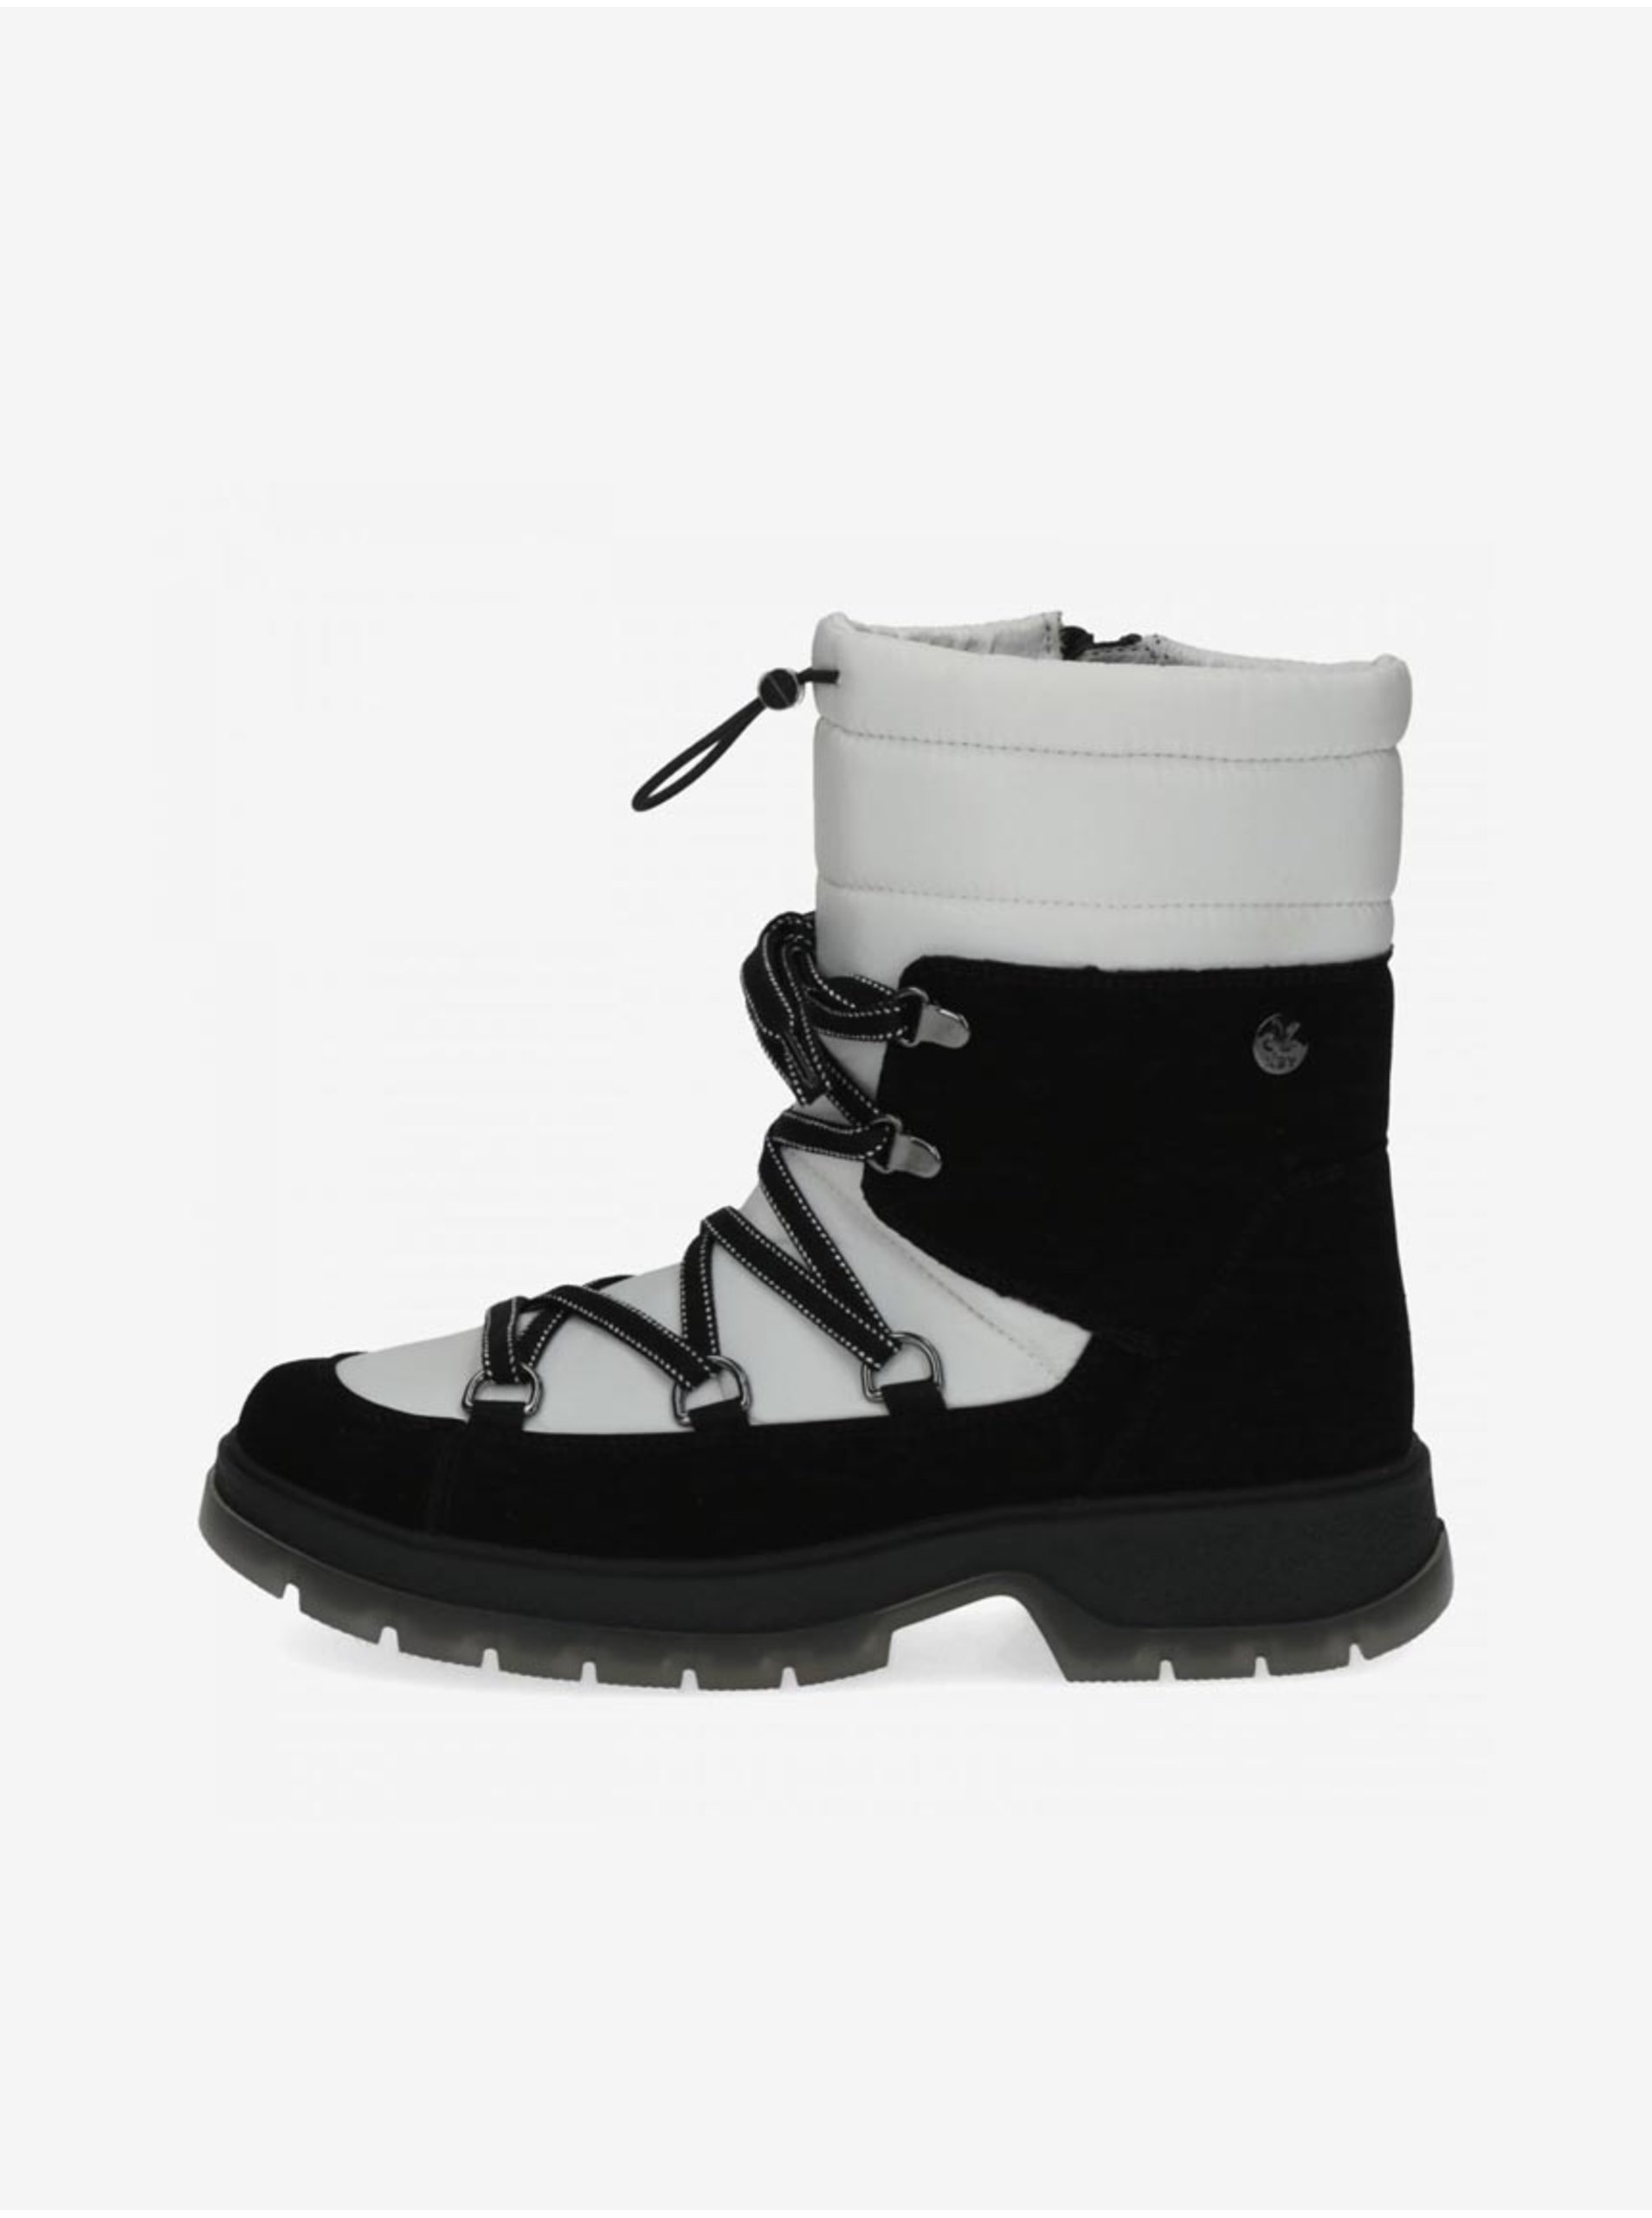 Lacno Zimná obuv pre ženy Caprice - biela, čierna